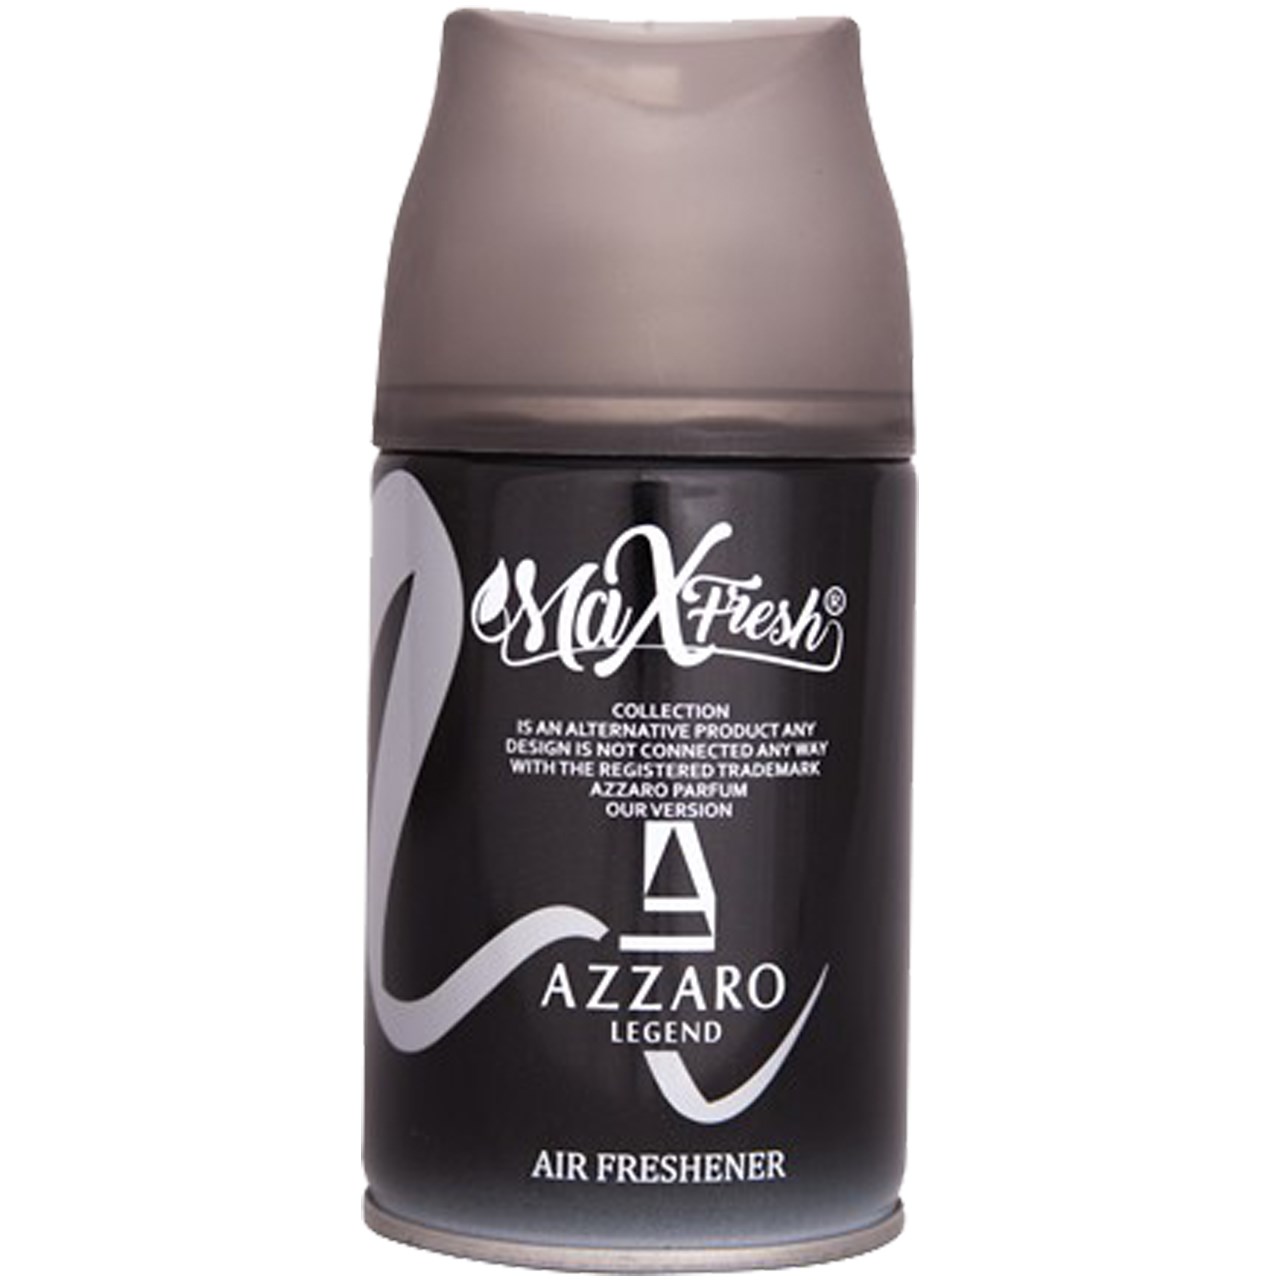 اسپری خوشبوکننده AZZARO حجم 250 میلی لیتر Max fresh